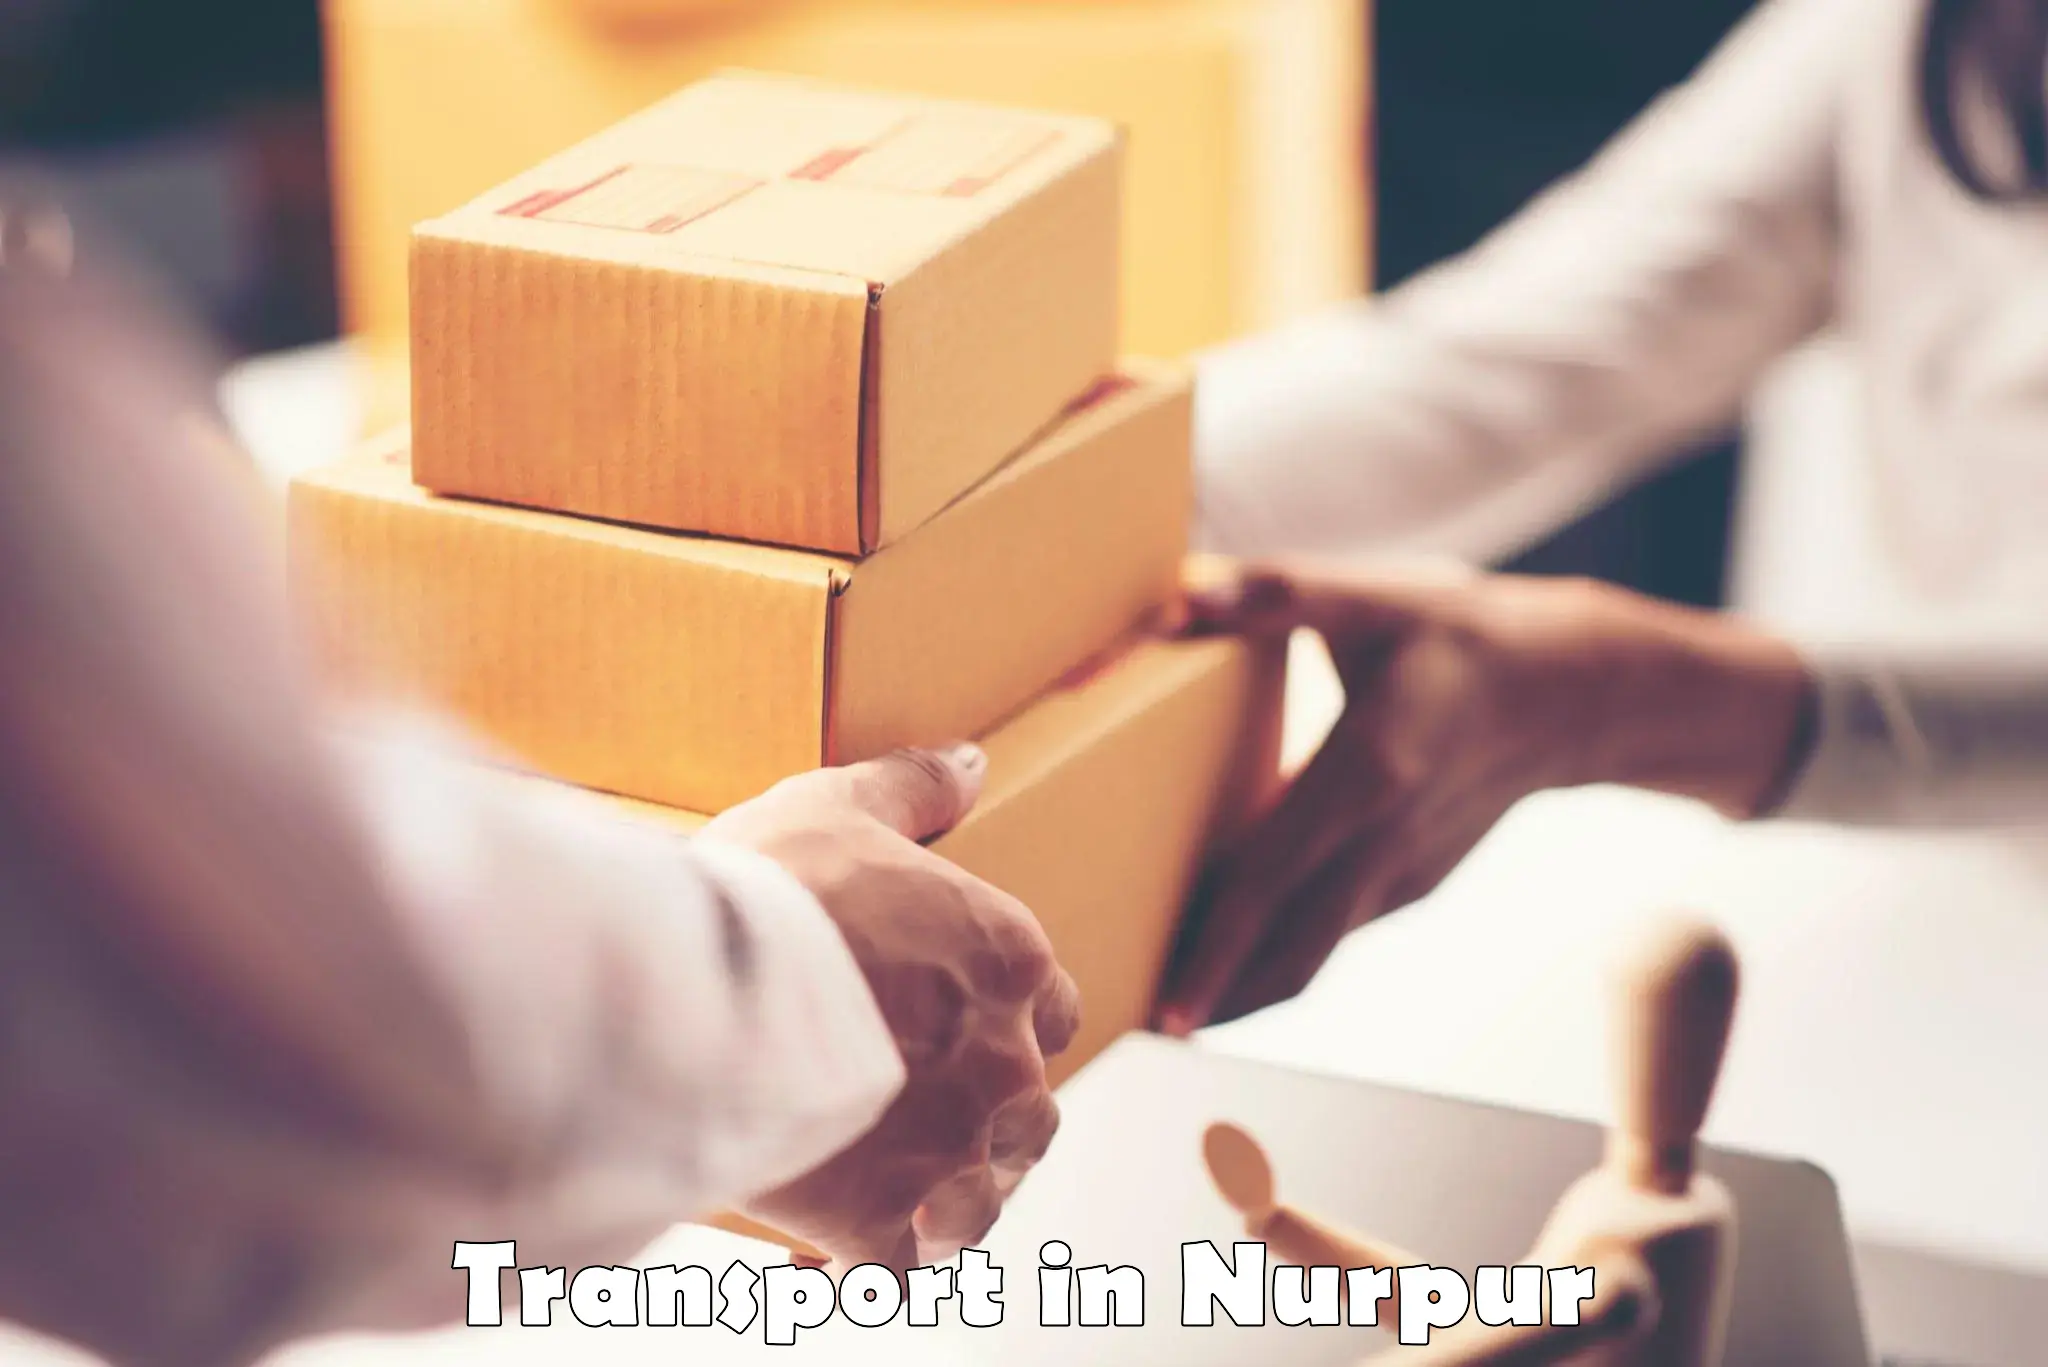 Transport services in Nurpur